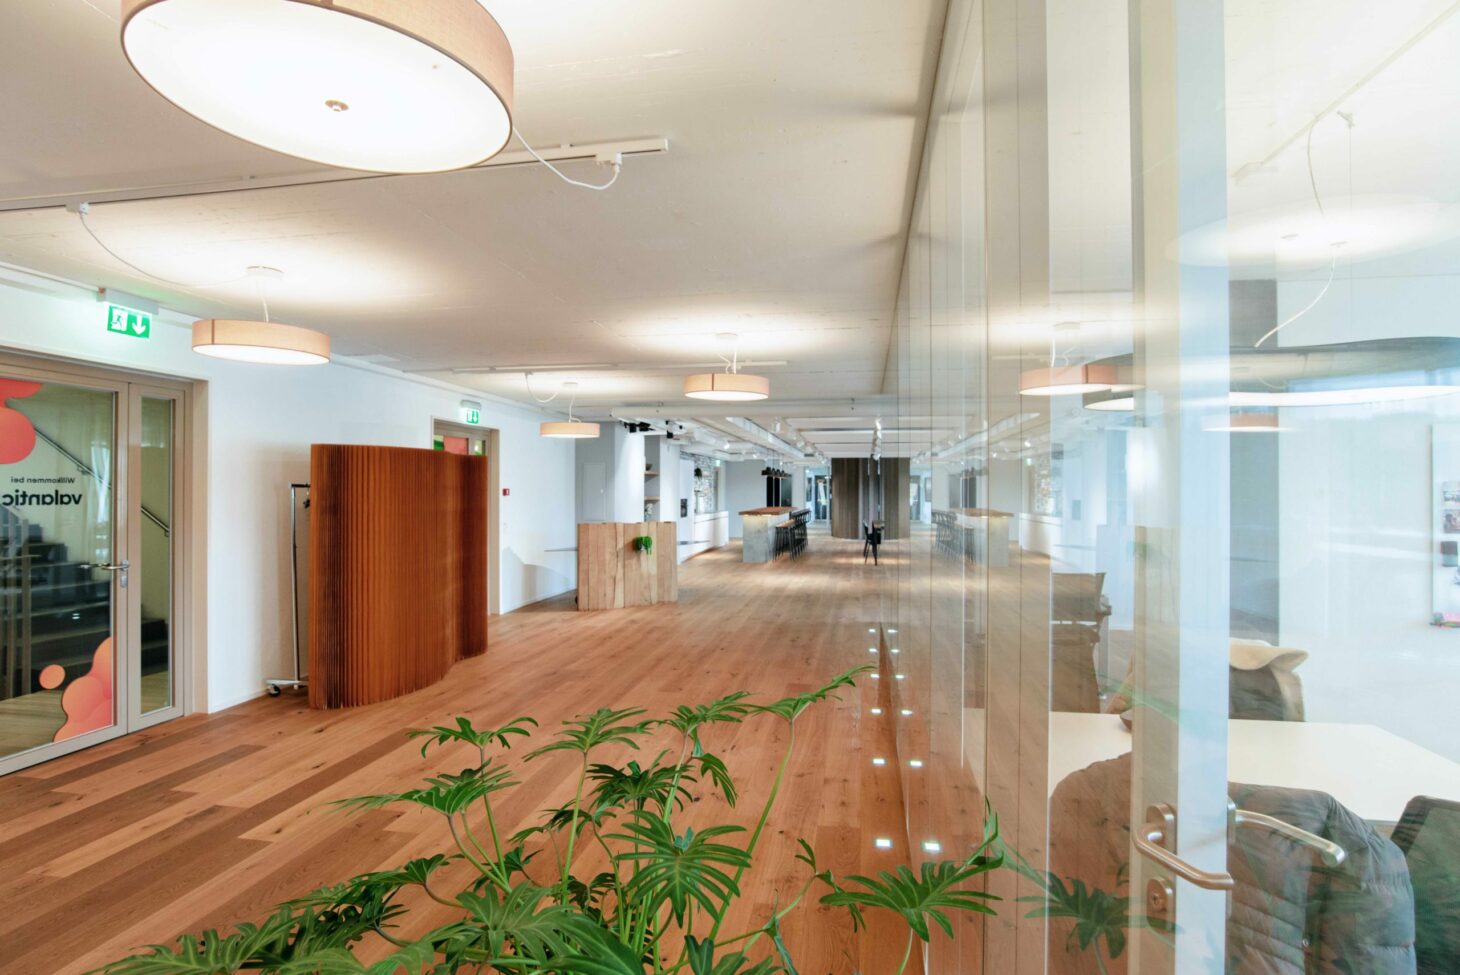 Bild von Büroräumen, valantic Niederlassung Customer Engagement & Commerce (CEC) Schweiz in St. Gallen